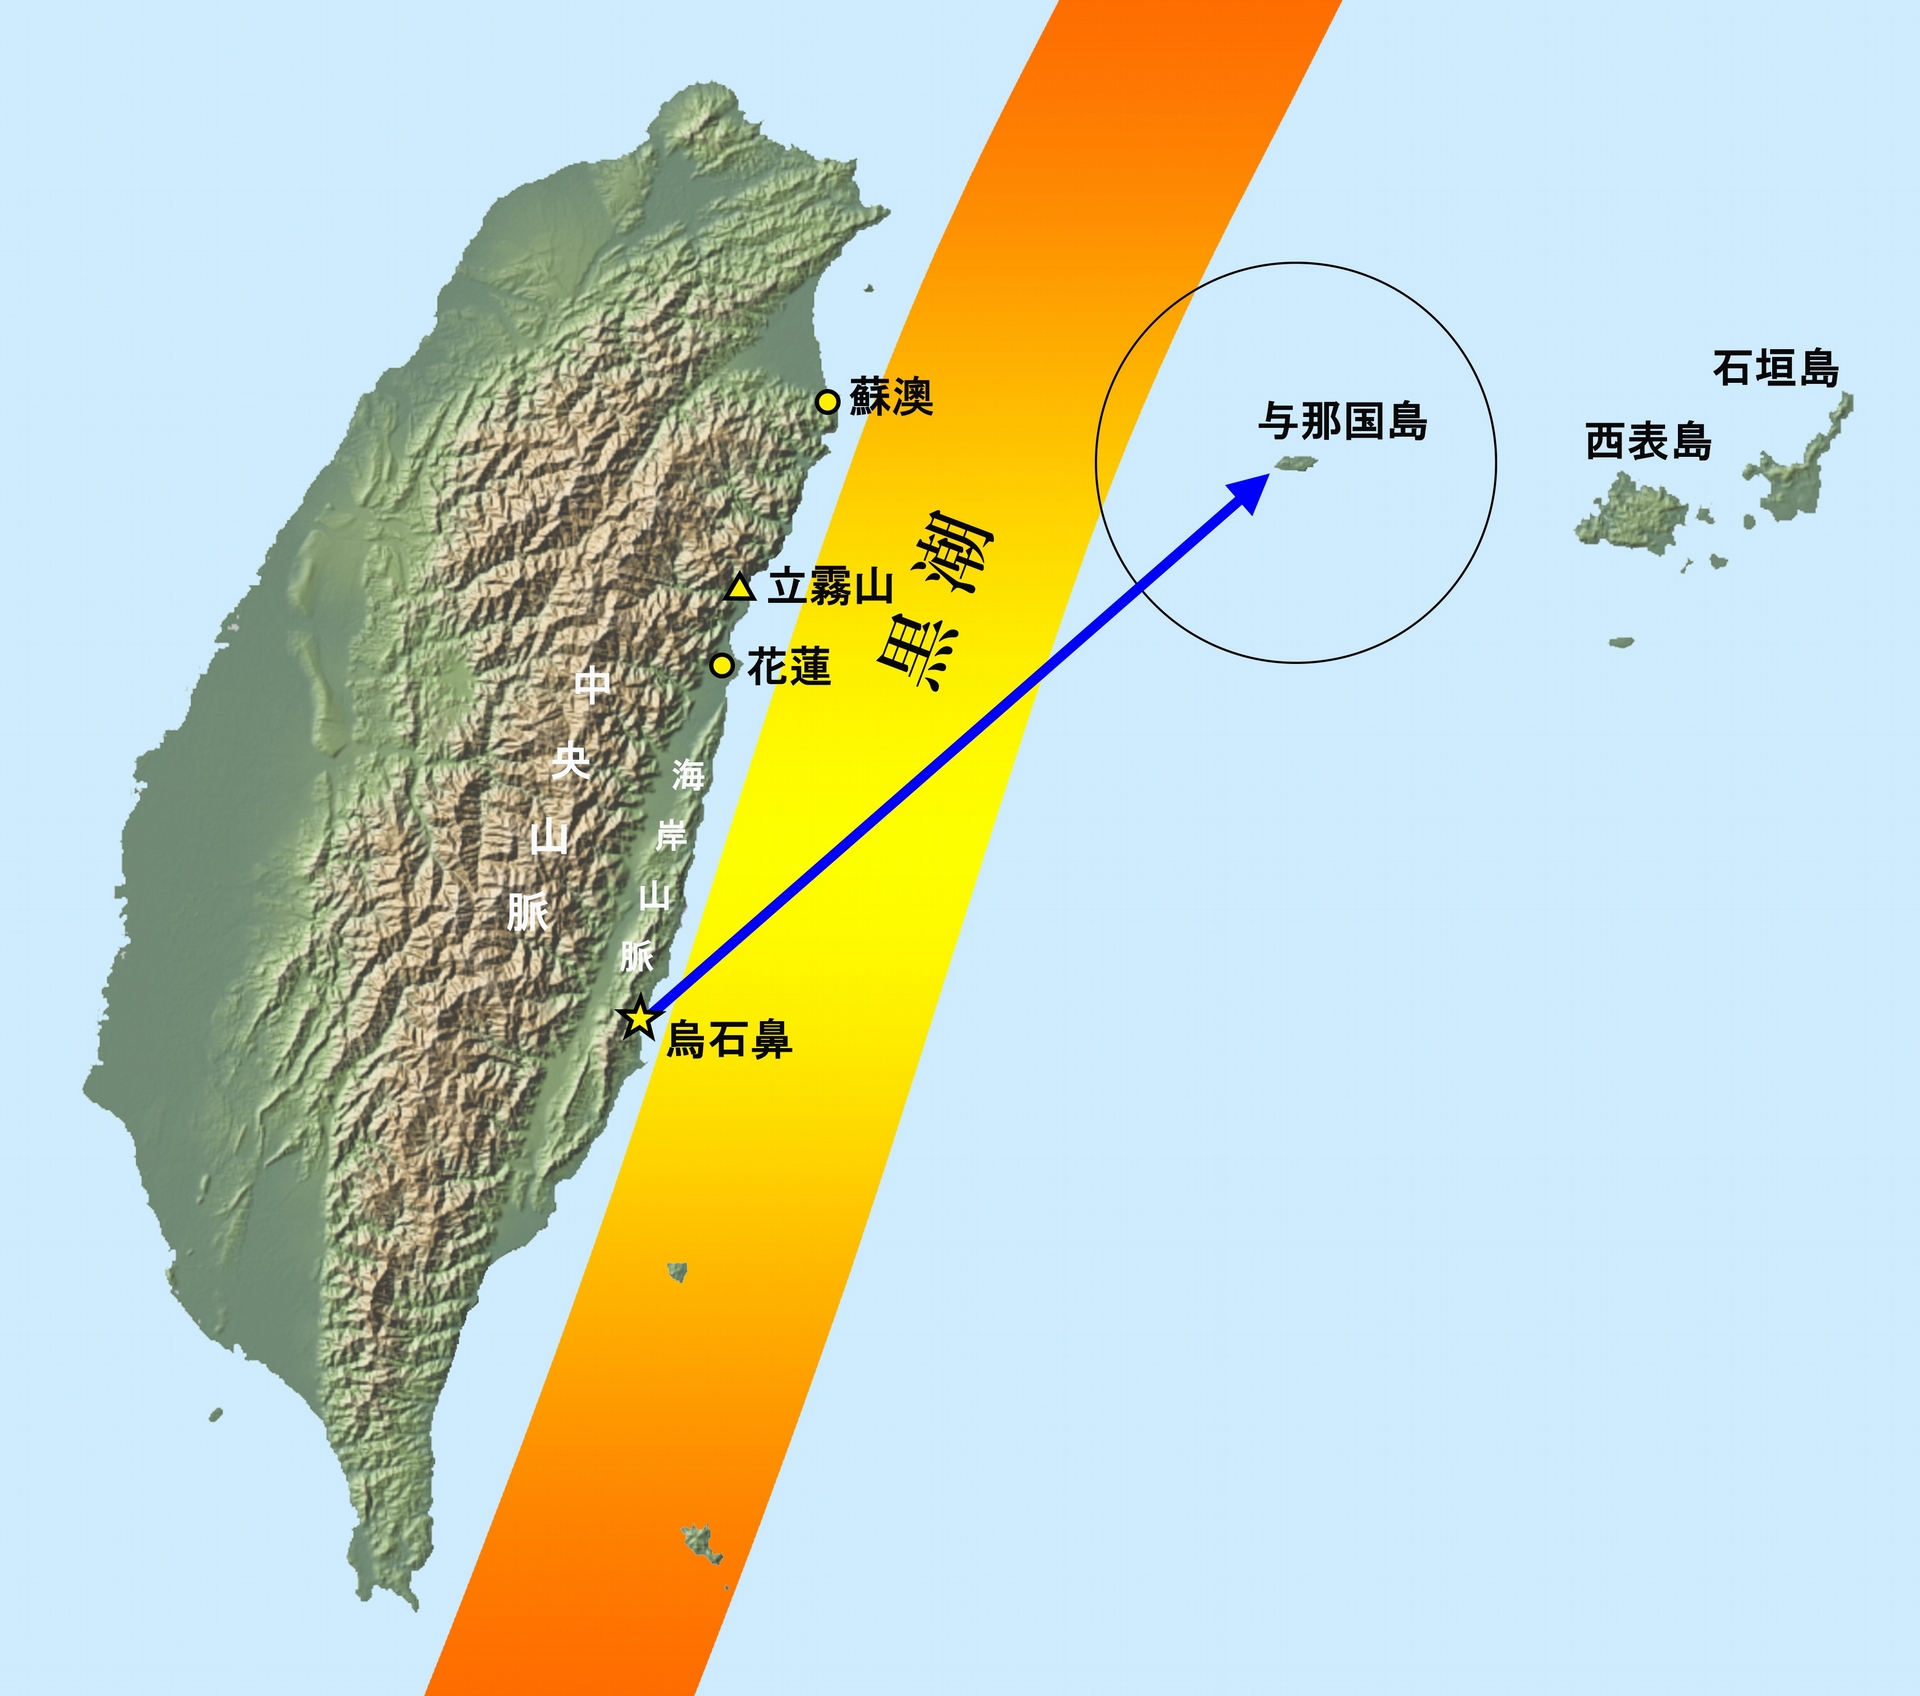 琉球群島南端的與那國島，距離臺灣僅 100 多公里，所以被選為關鍵的實驗地點。圖／海部陽介 提供